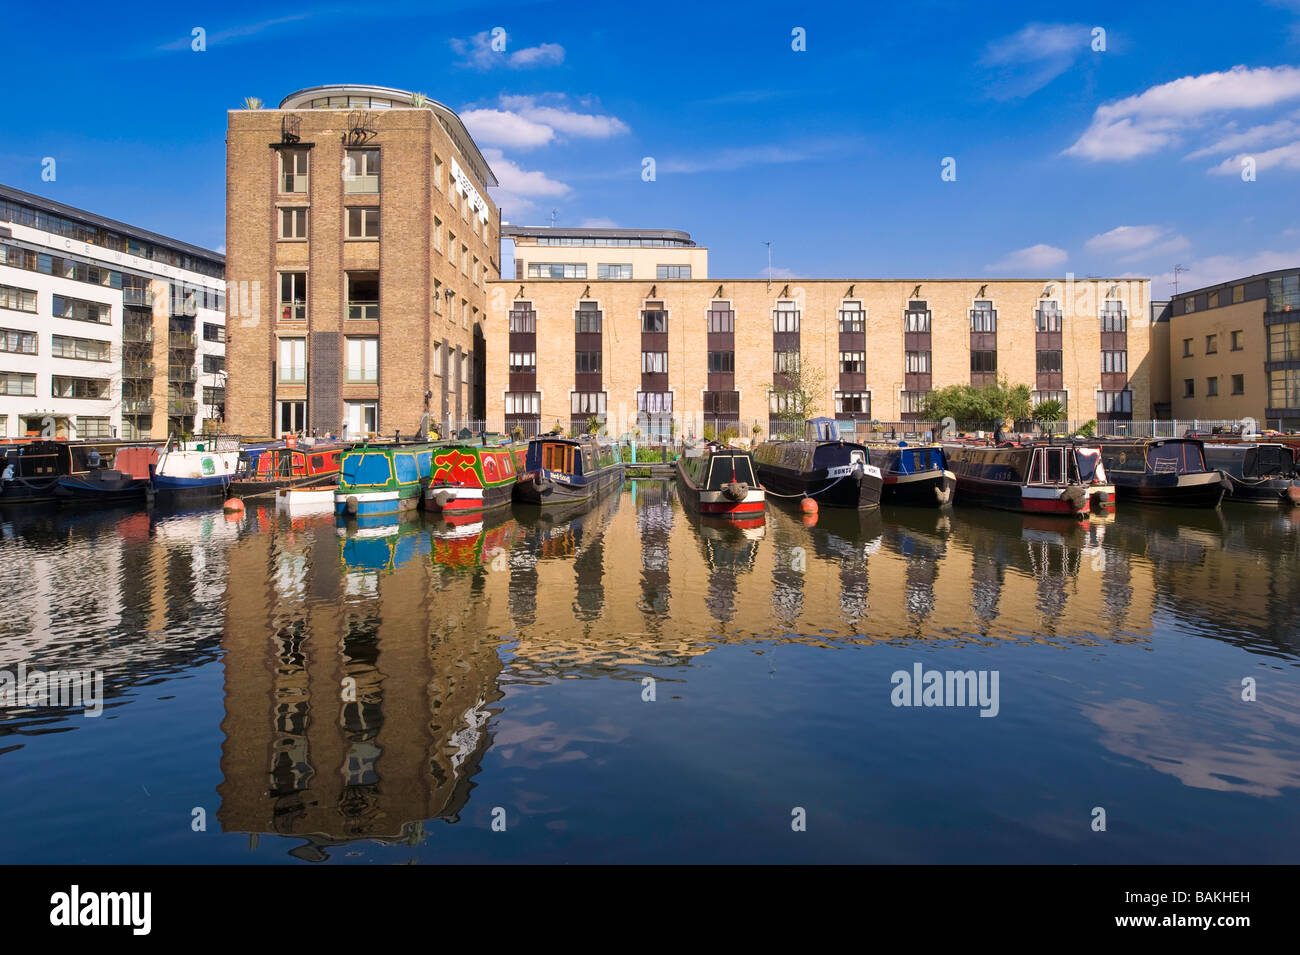 Modernisierte Docks in Wohnimmobilien durch Regents Canal London Vereinigtes Königreich Stockfoto